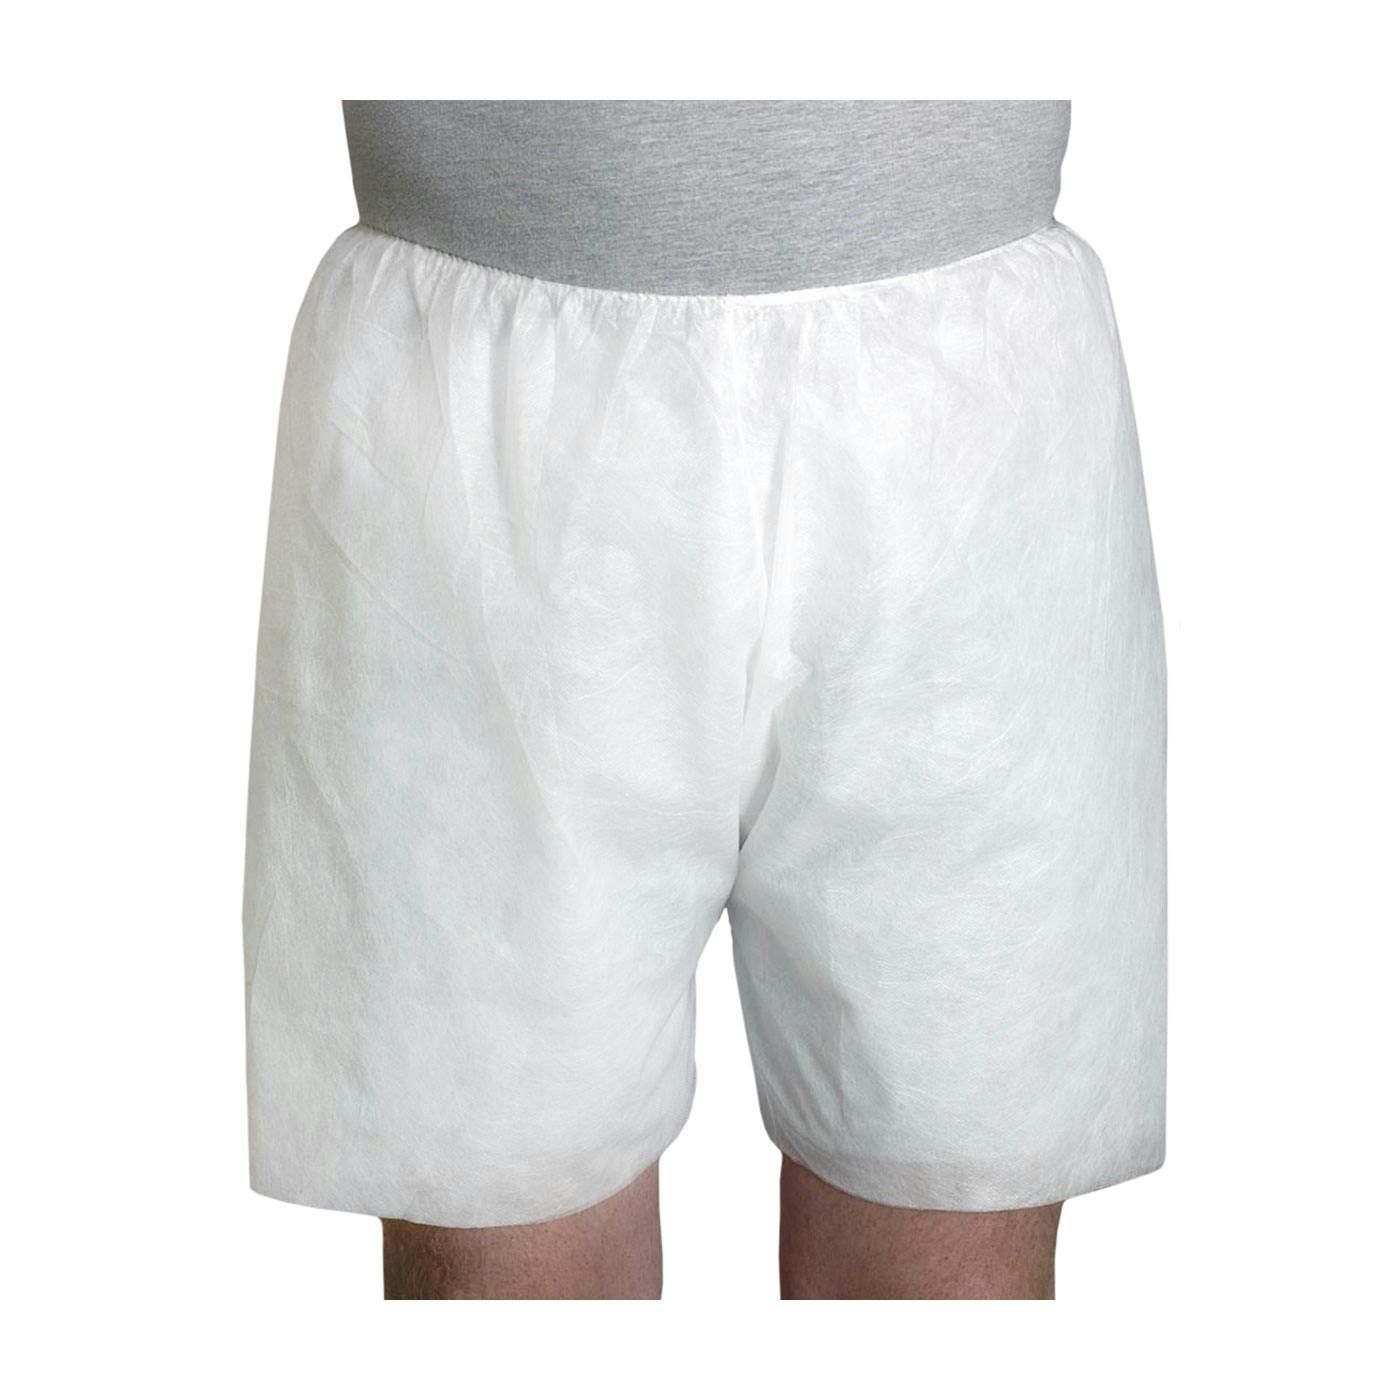 SBP Boxer Shorts 36 gsm, White (U2010) - OS